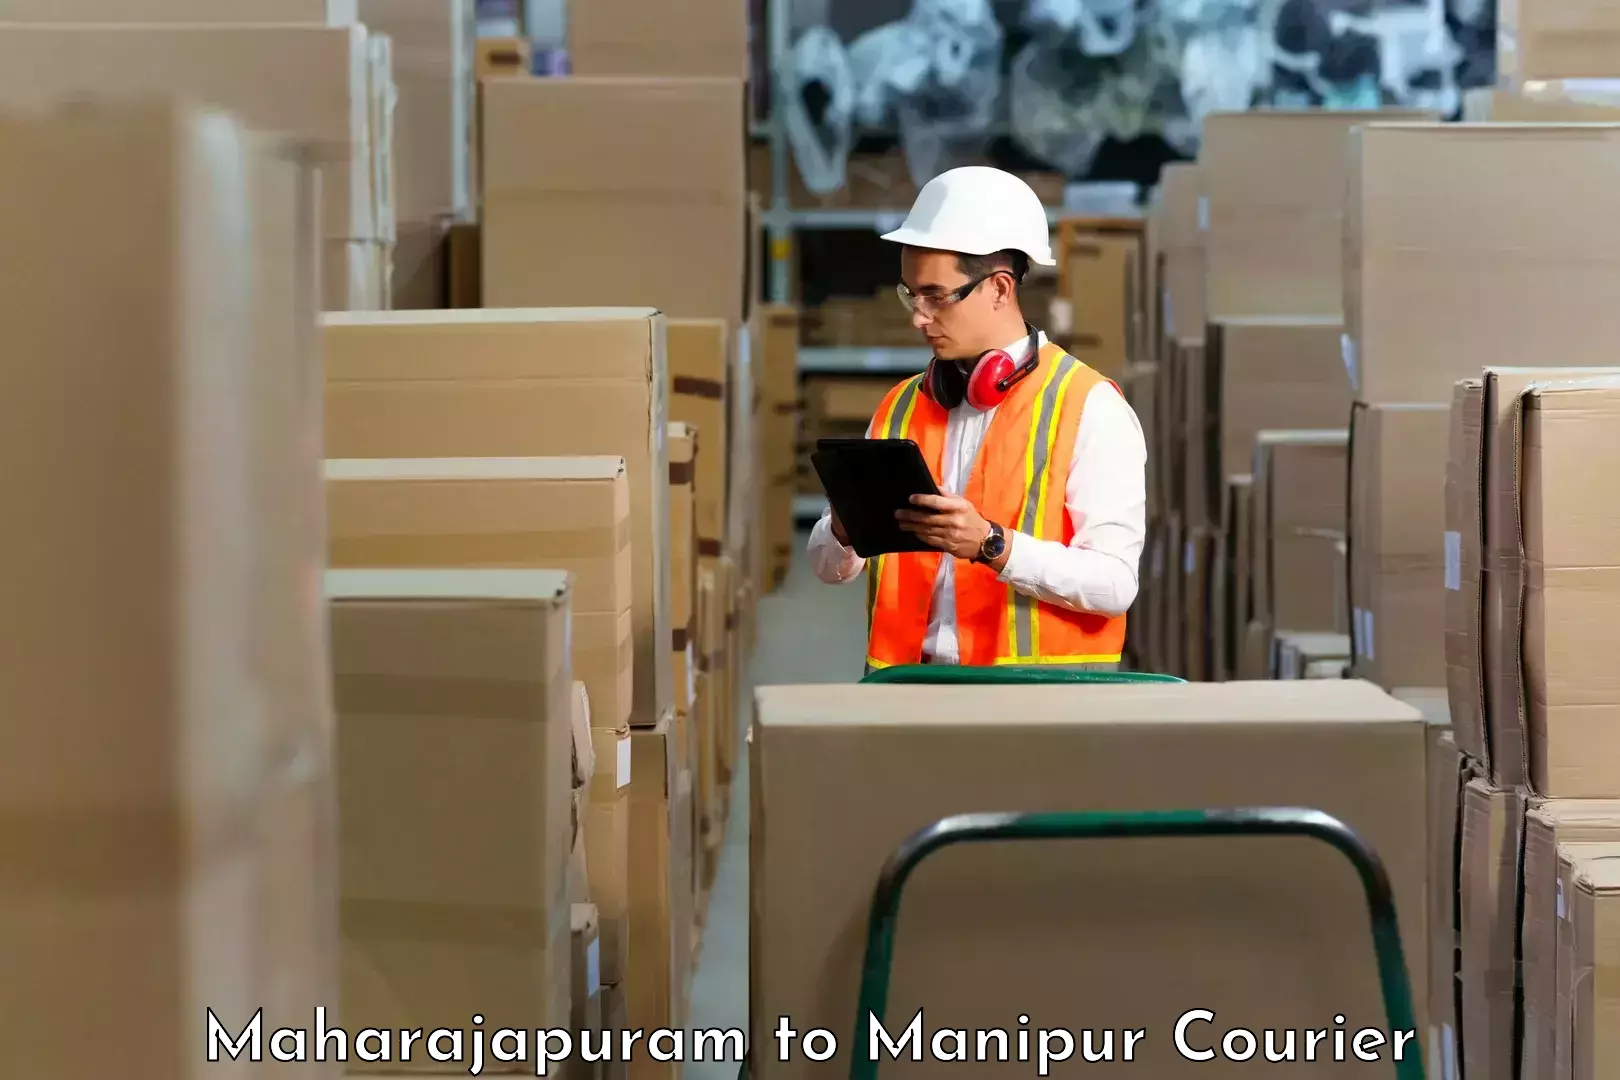 Tech-enabled shipping Maharajapuram to Thoubal